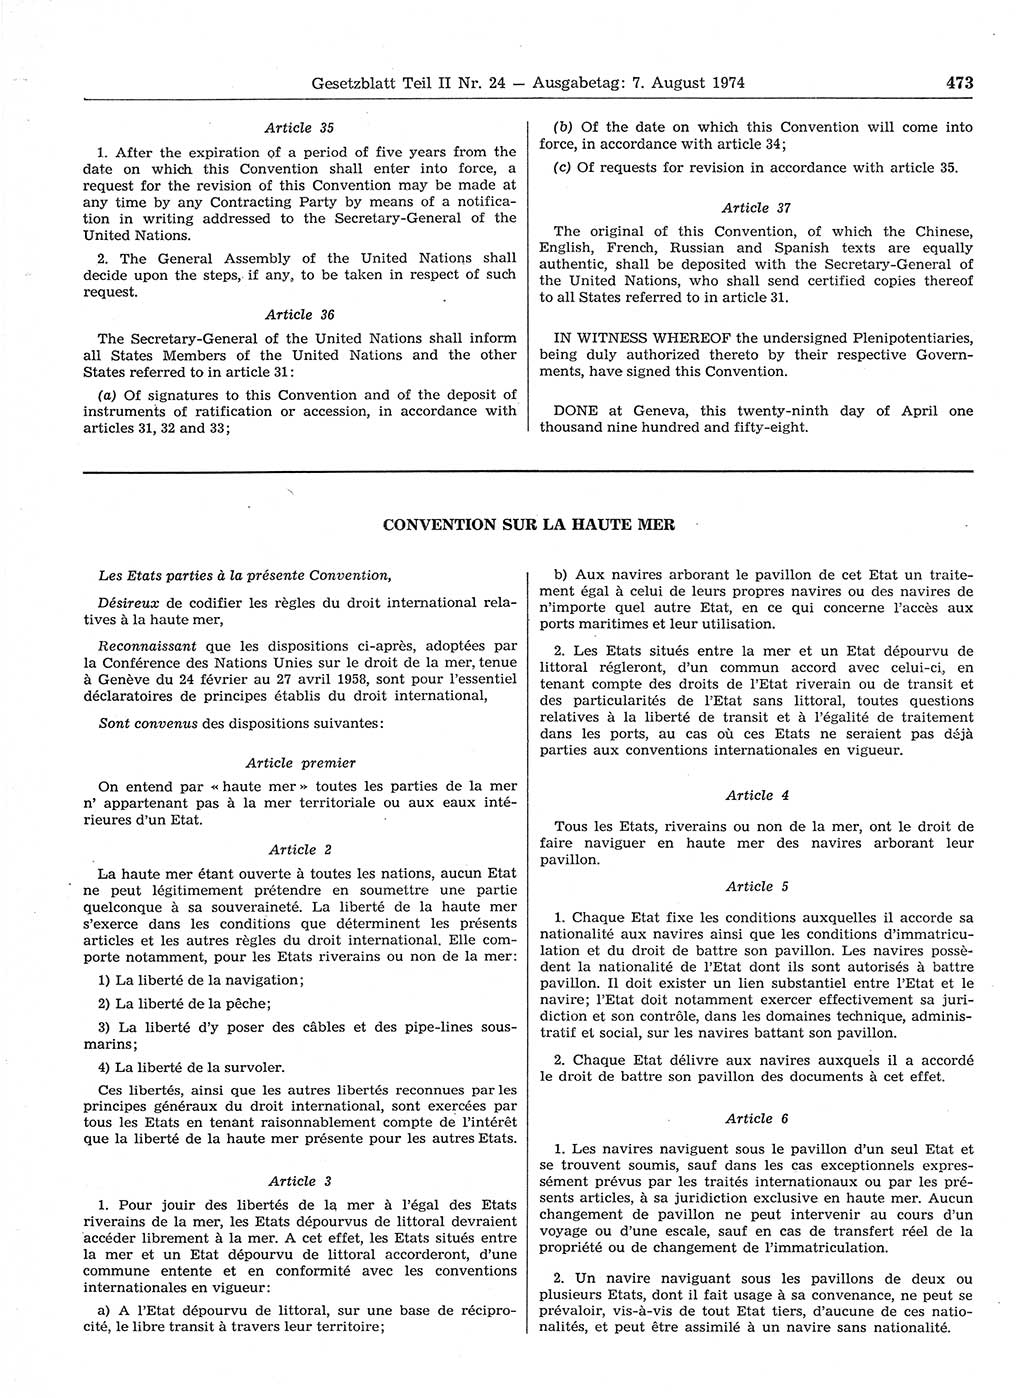 Gesetzblatt (GBl.) der Deutschen Demokratischen Republik (DDR) Teil ⅠⅠ 1974, Seite 473 (GBl. DDR ⅠⅠ 1974, S. 473)